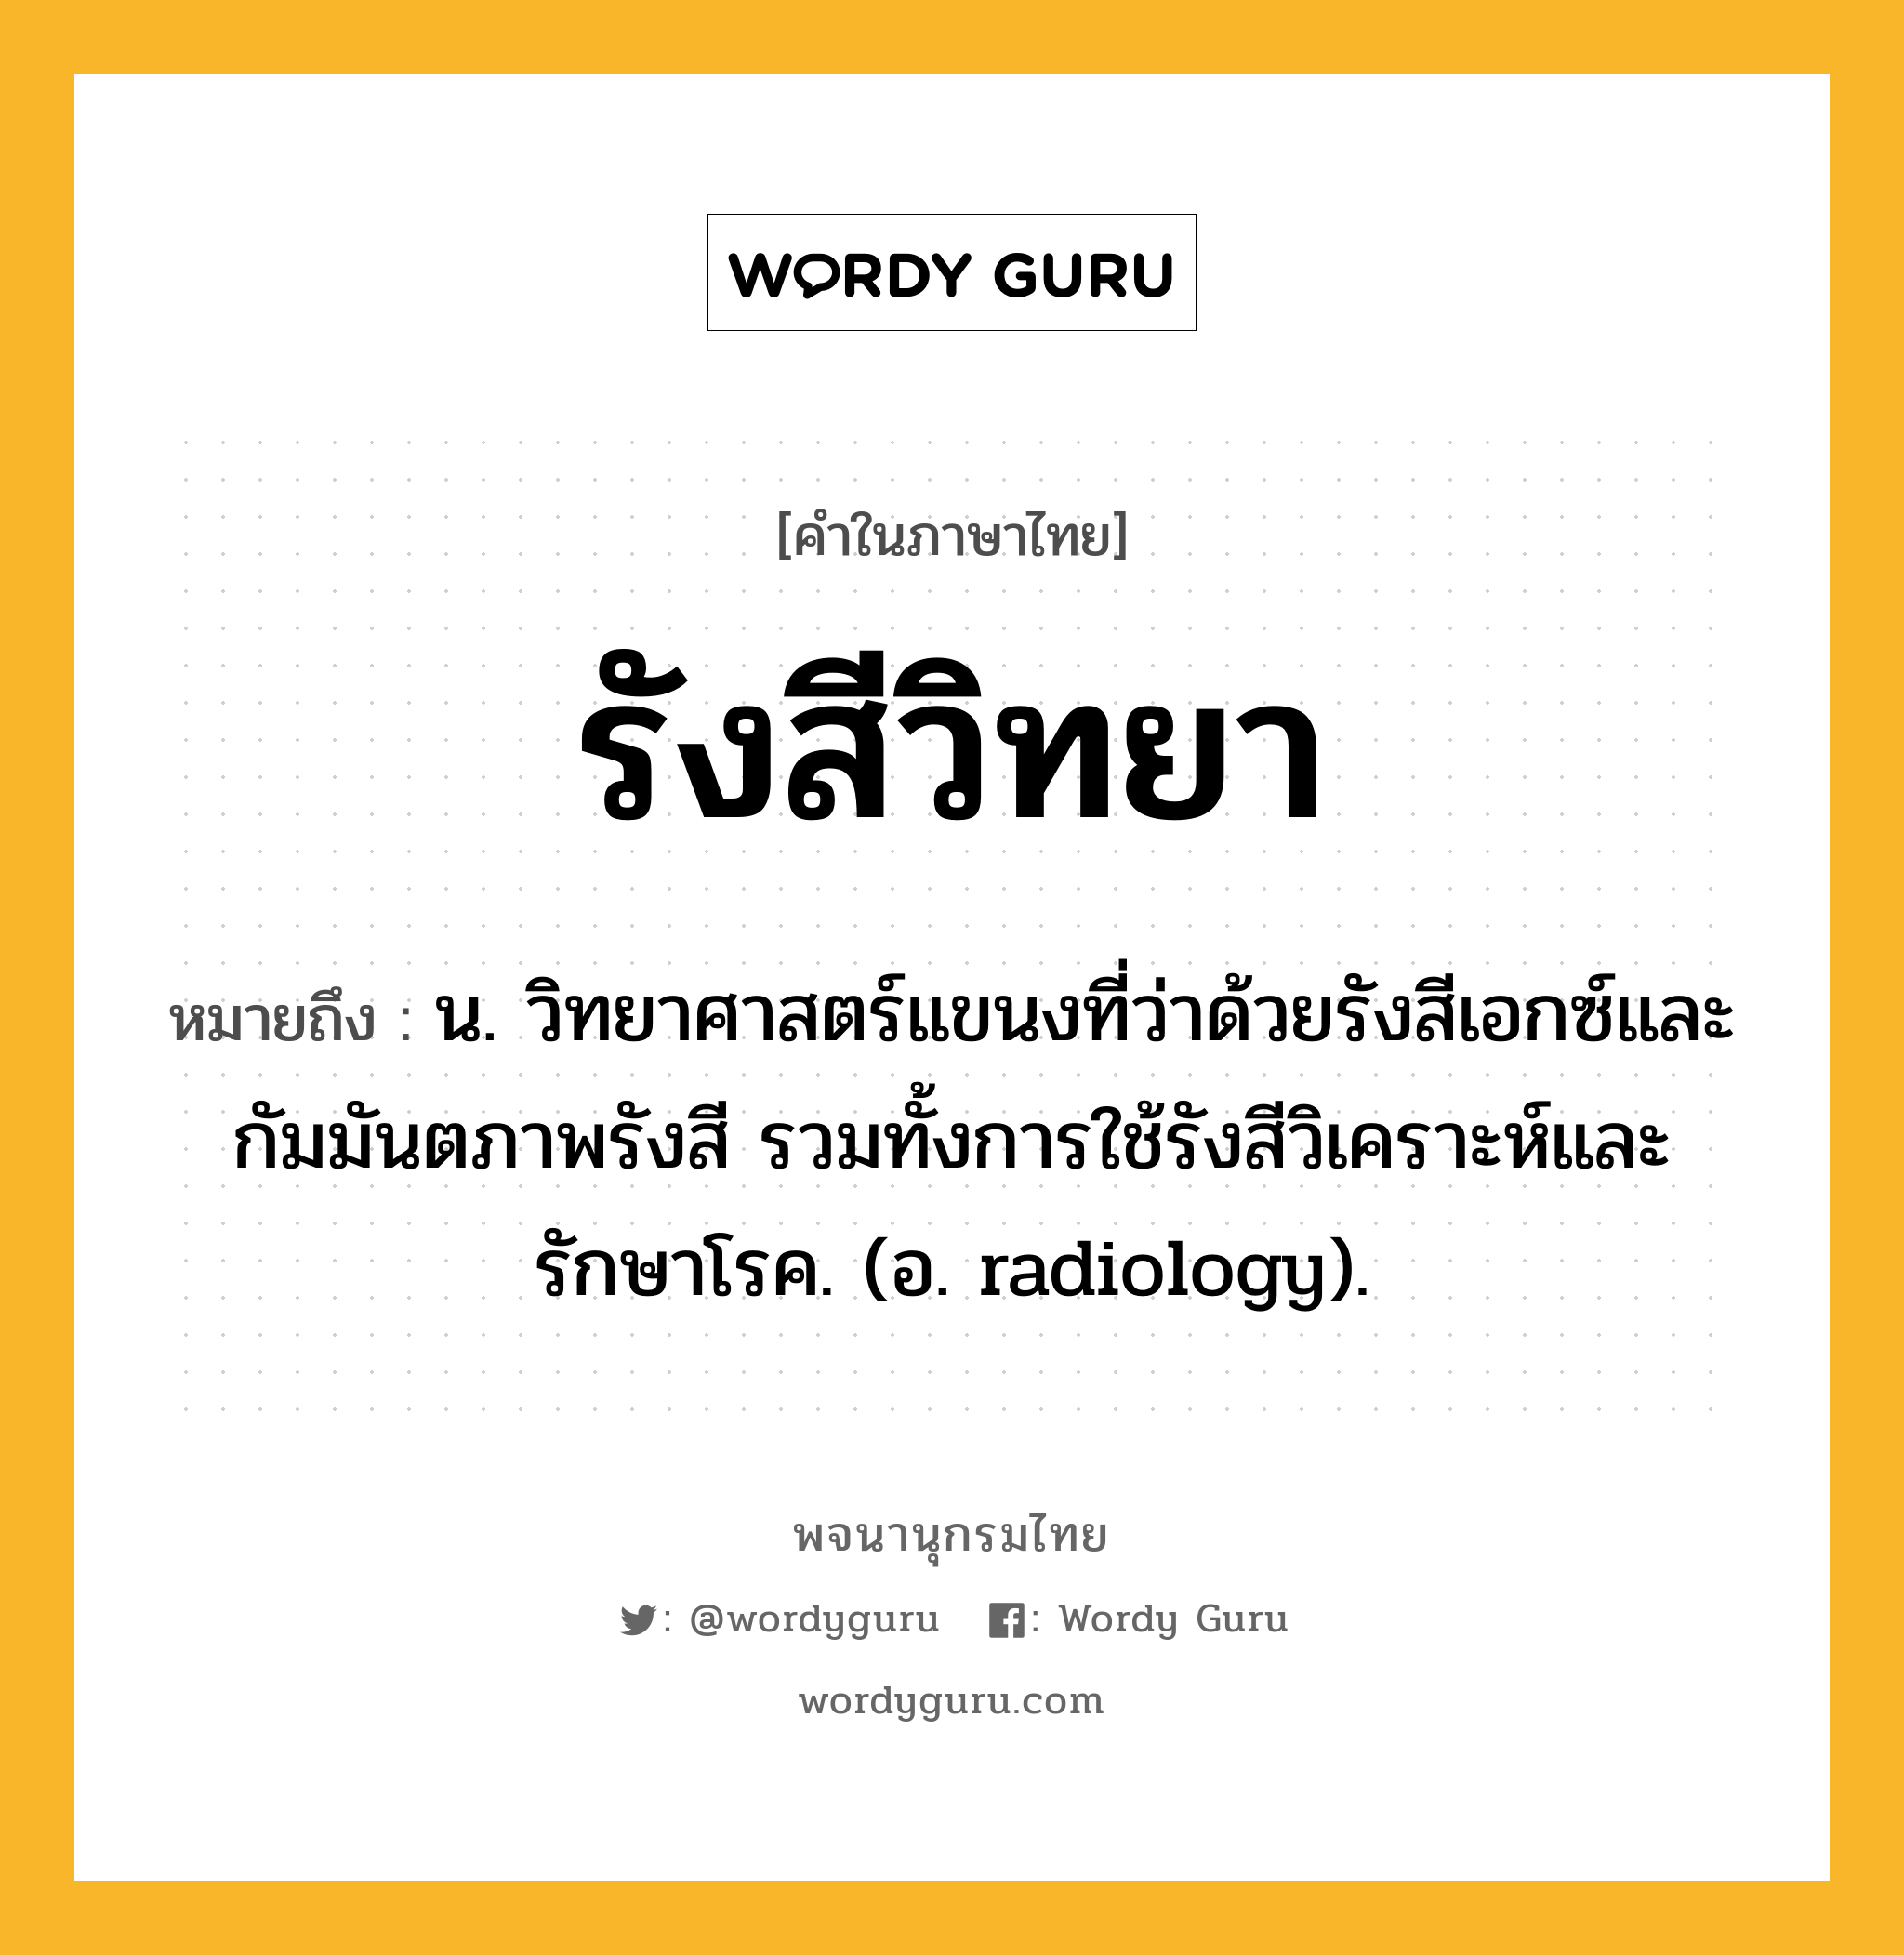 รังสีวิทยา ความหมาย หมายถึงอะไร?, คำในภาษาไทย รังสีวิทยา หมายถึง น. วิทยาศาสตร์แขนงที่ว่าด้วยรังสีเอกซ์และกัมมันตภาพรังสี รวมทั้งการใช้รังสีวิเคราะห์และรักษาโรค. (อ. radiology).